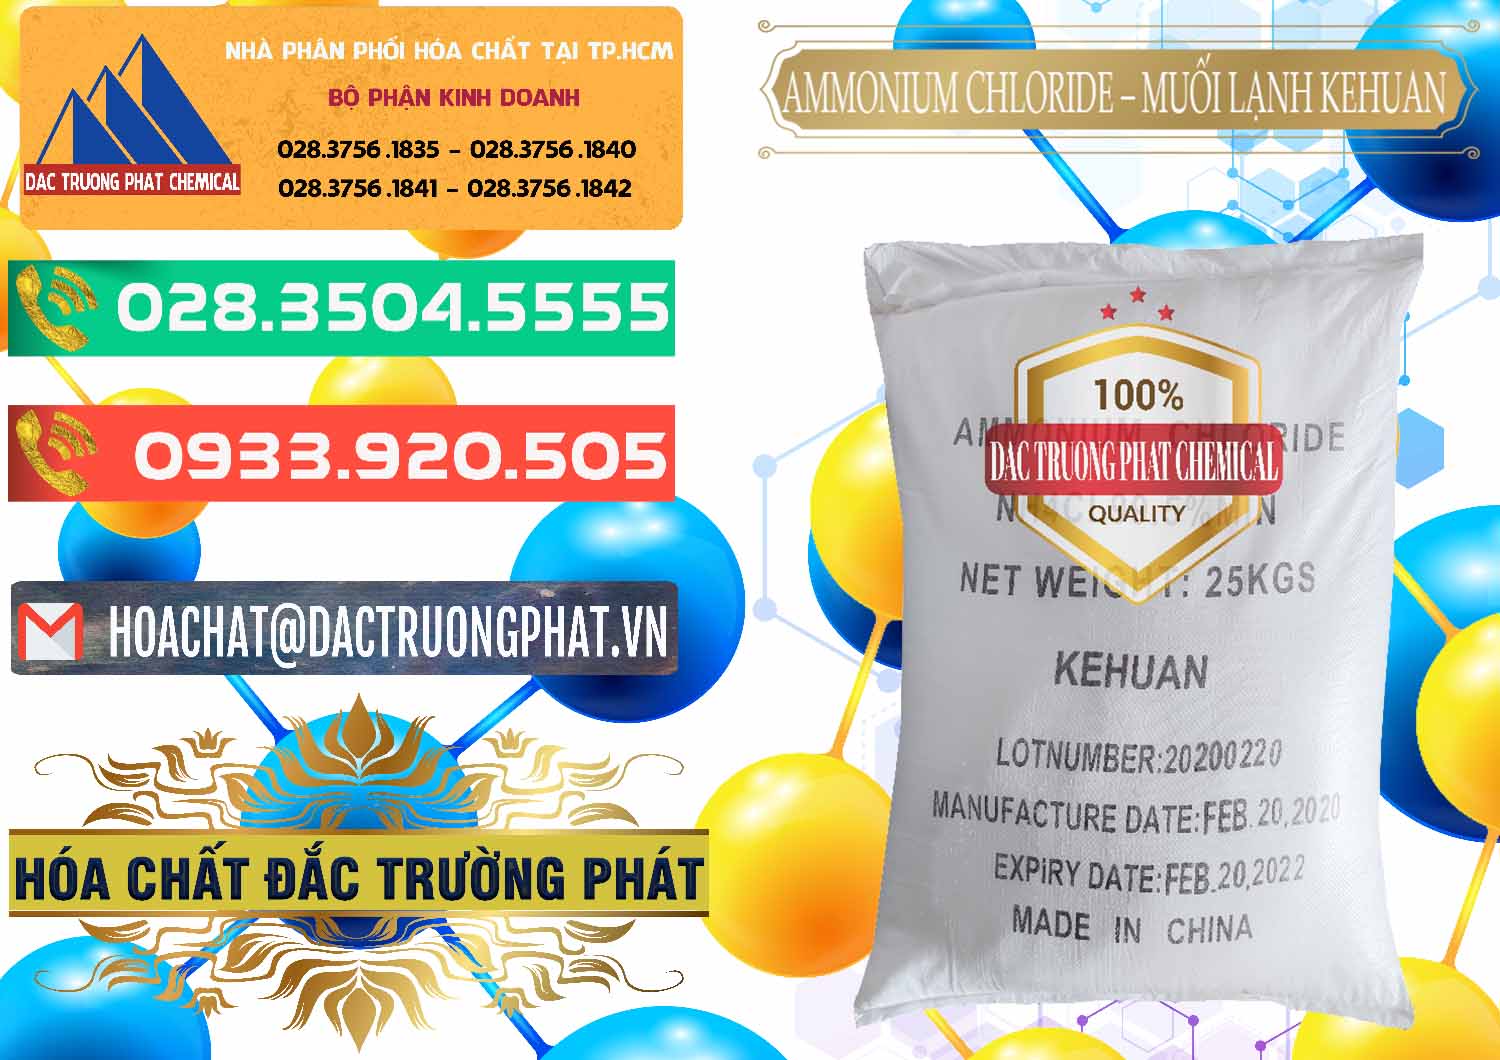 Phân phối _ bán Ammonium Chloride – NH4CL Muối Lạnh Kehuan Trung Quốc China - 0022 - Công ty chuyên kinh doanh và cung cấp hóa chất tại TP.HCM - congtyhoachat.com.vn